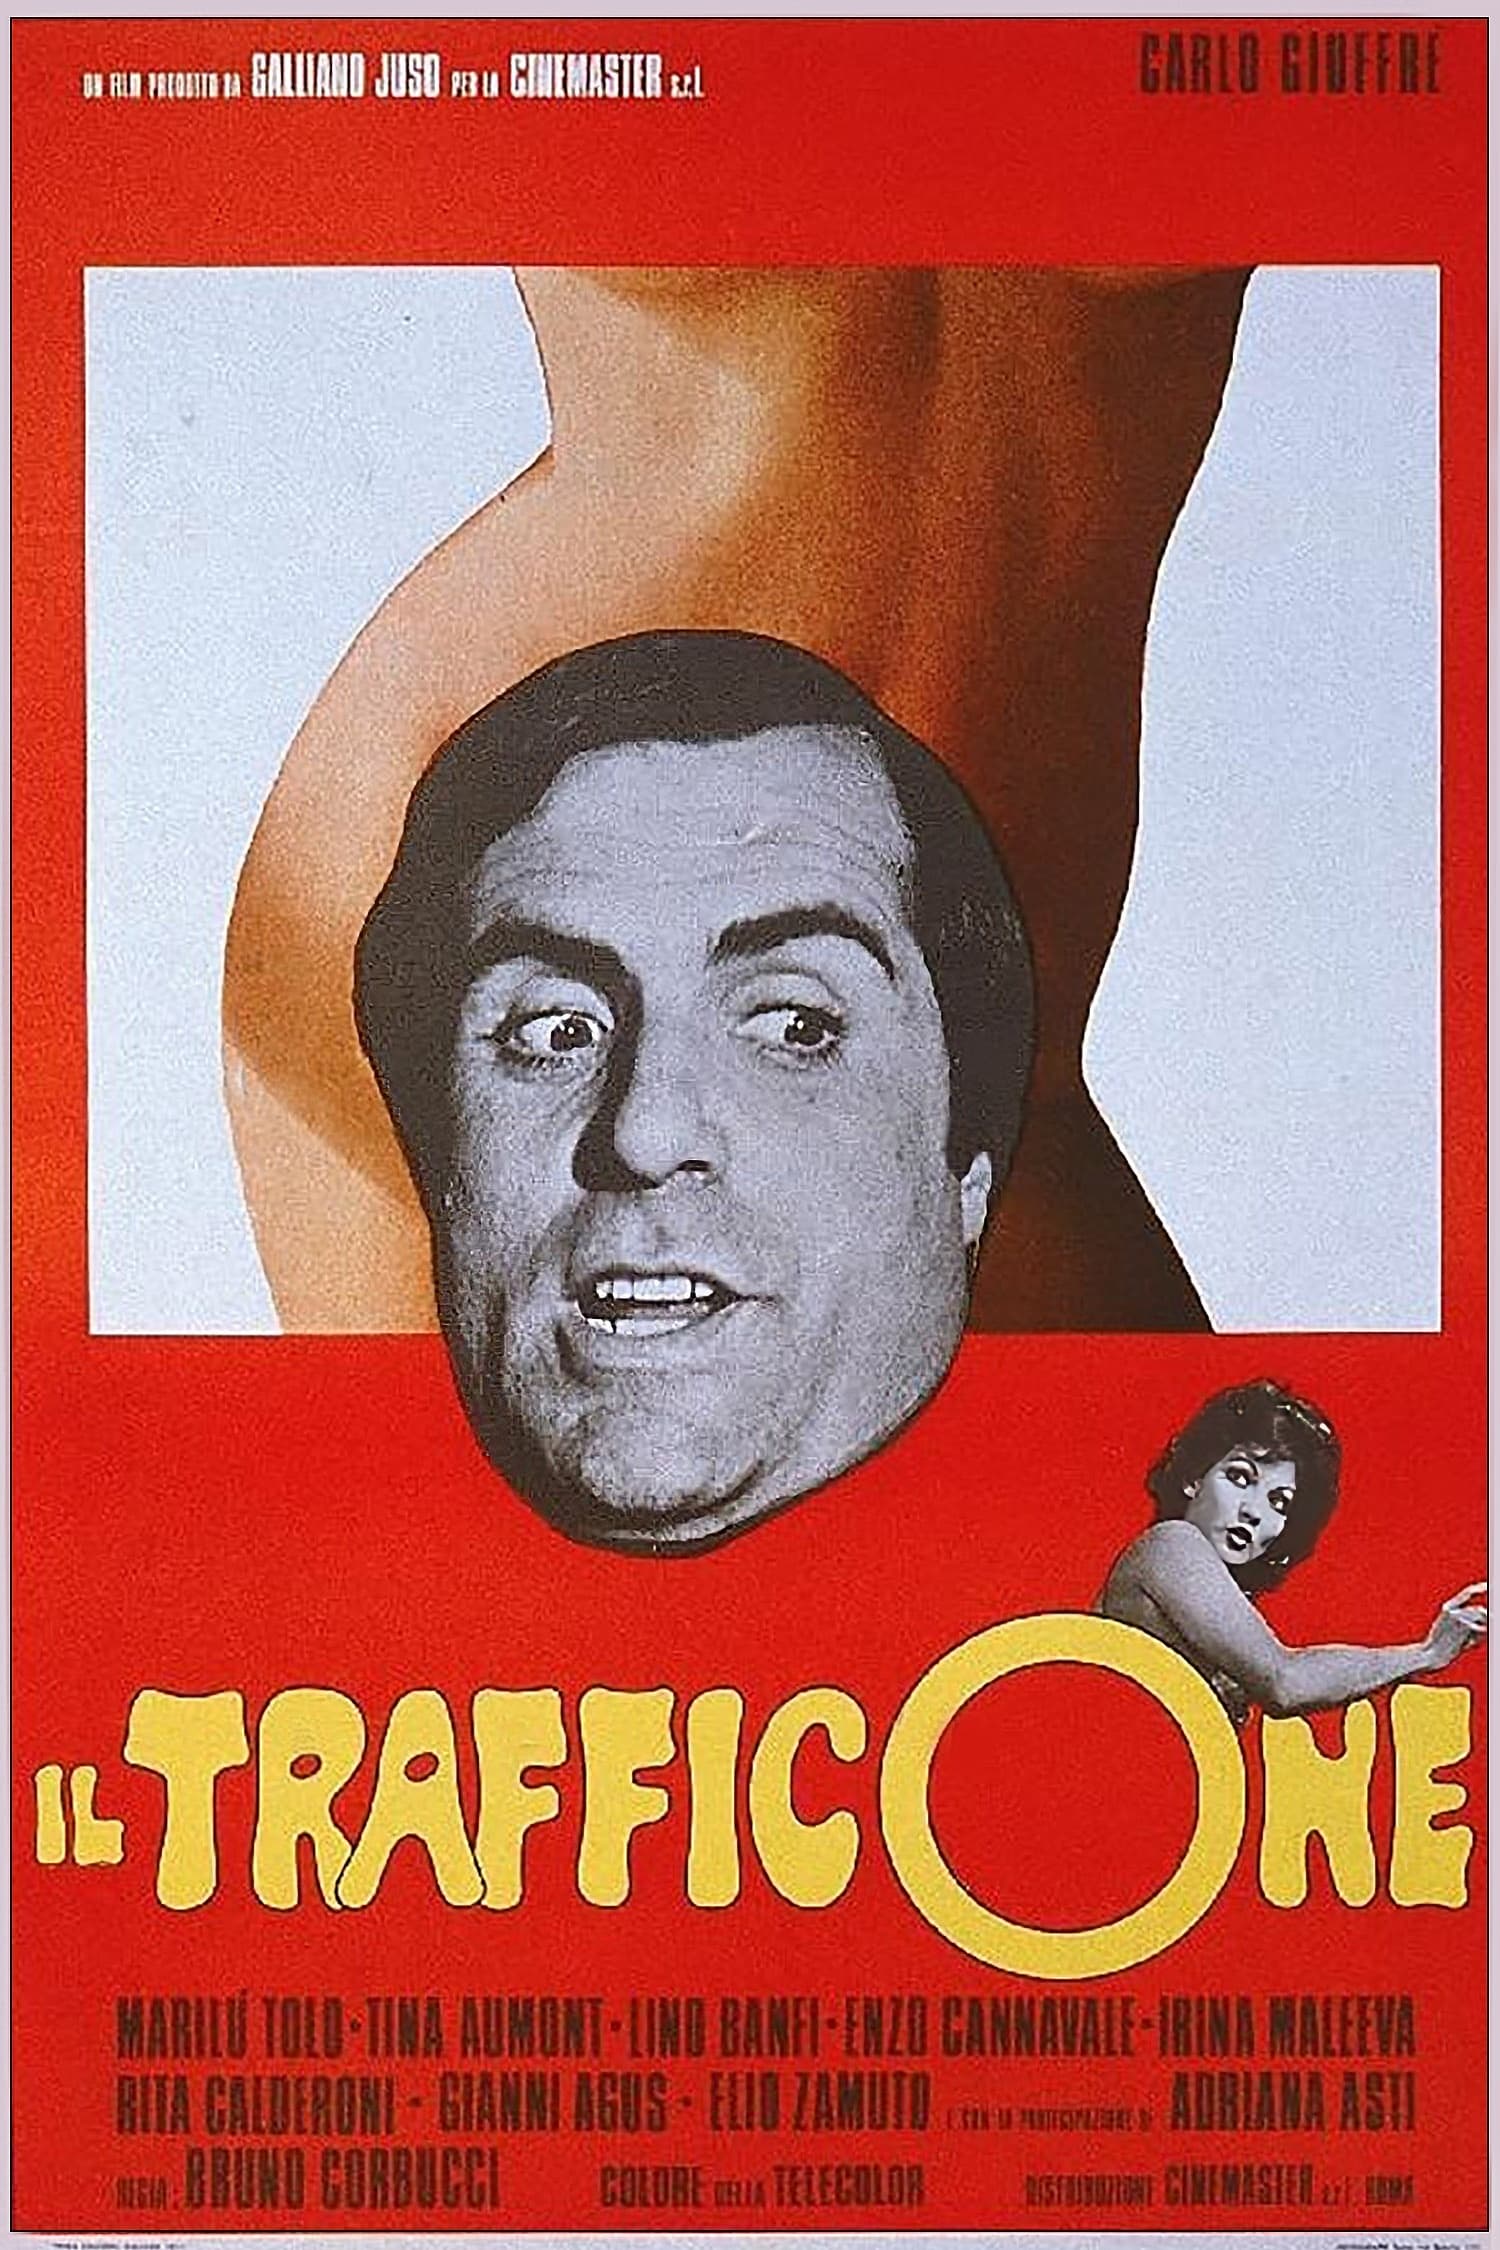 Il trafficone (1974)